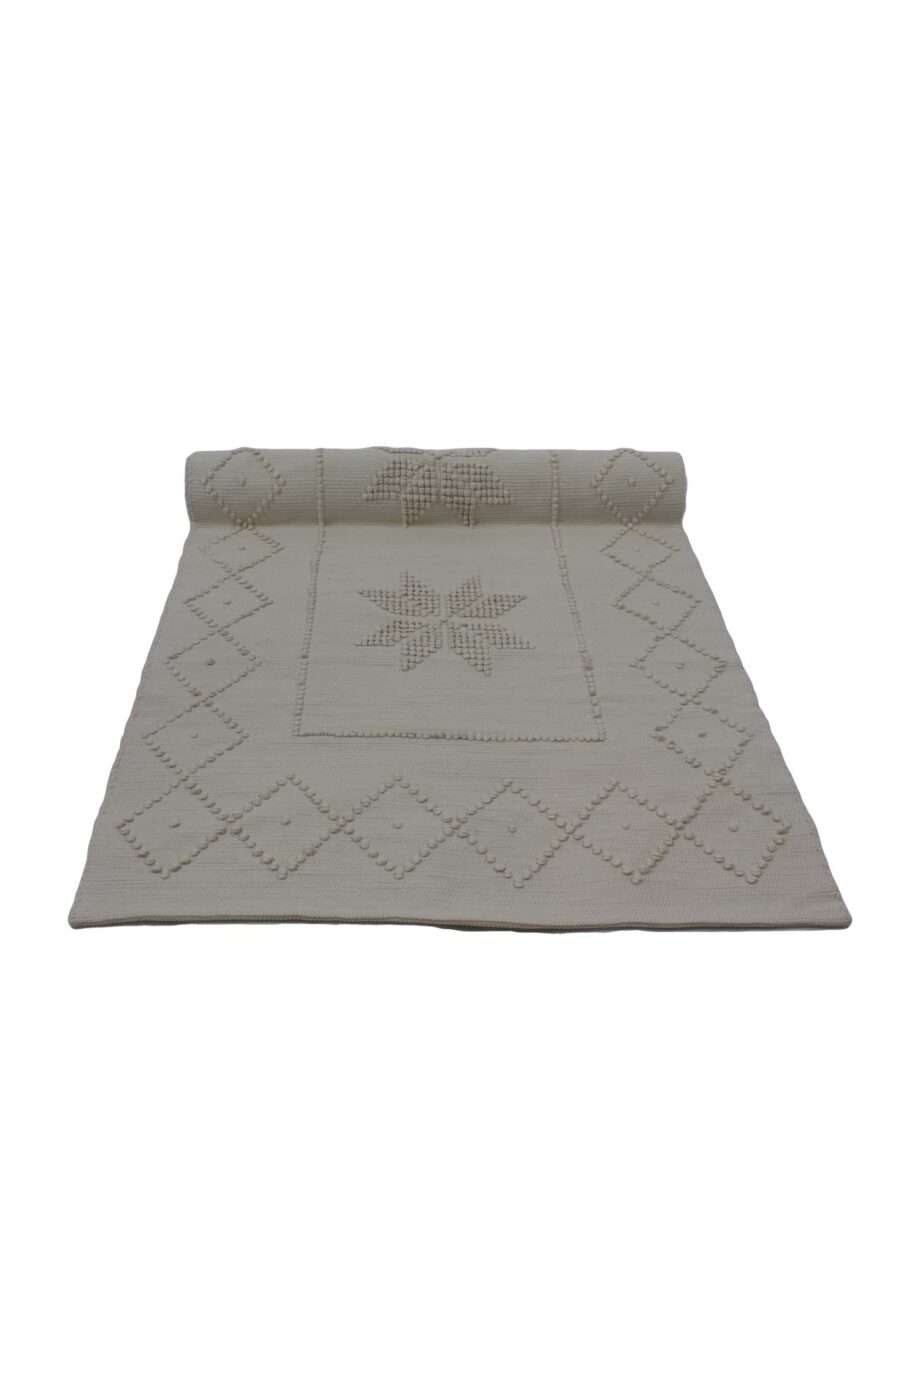 star linen woven cotton floor mat xxlarge